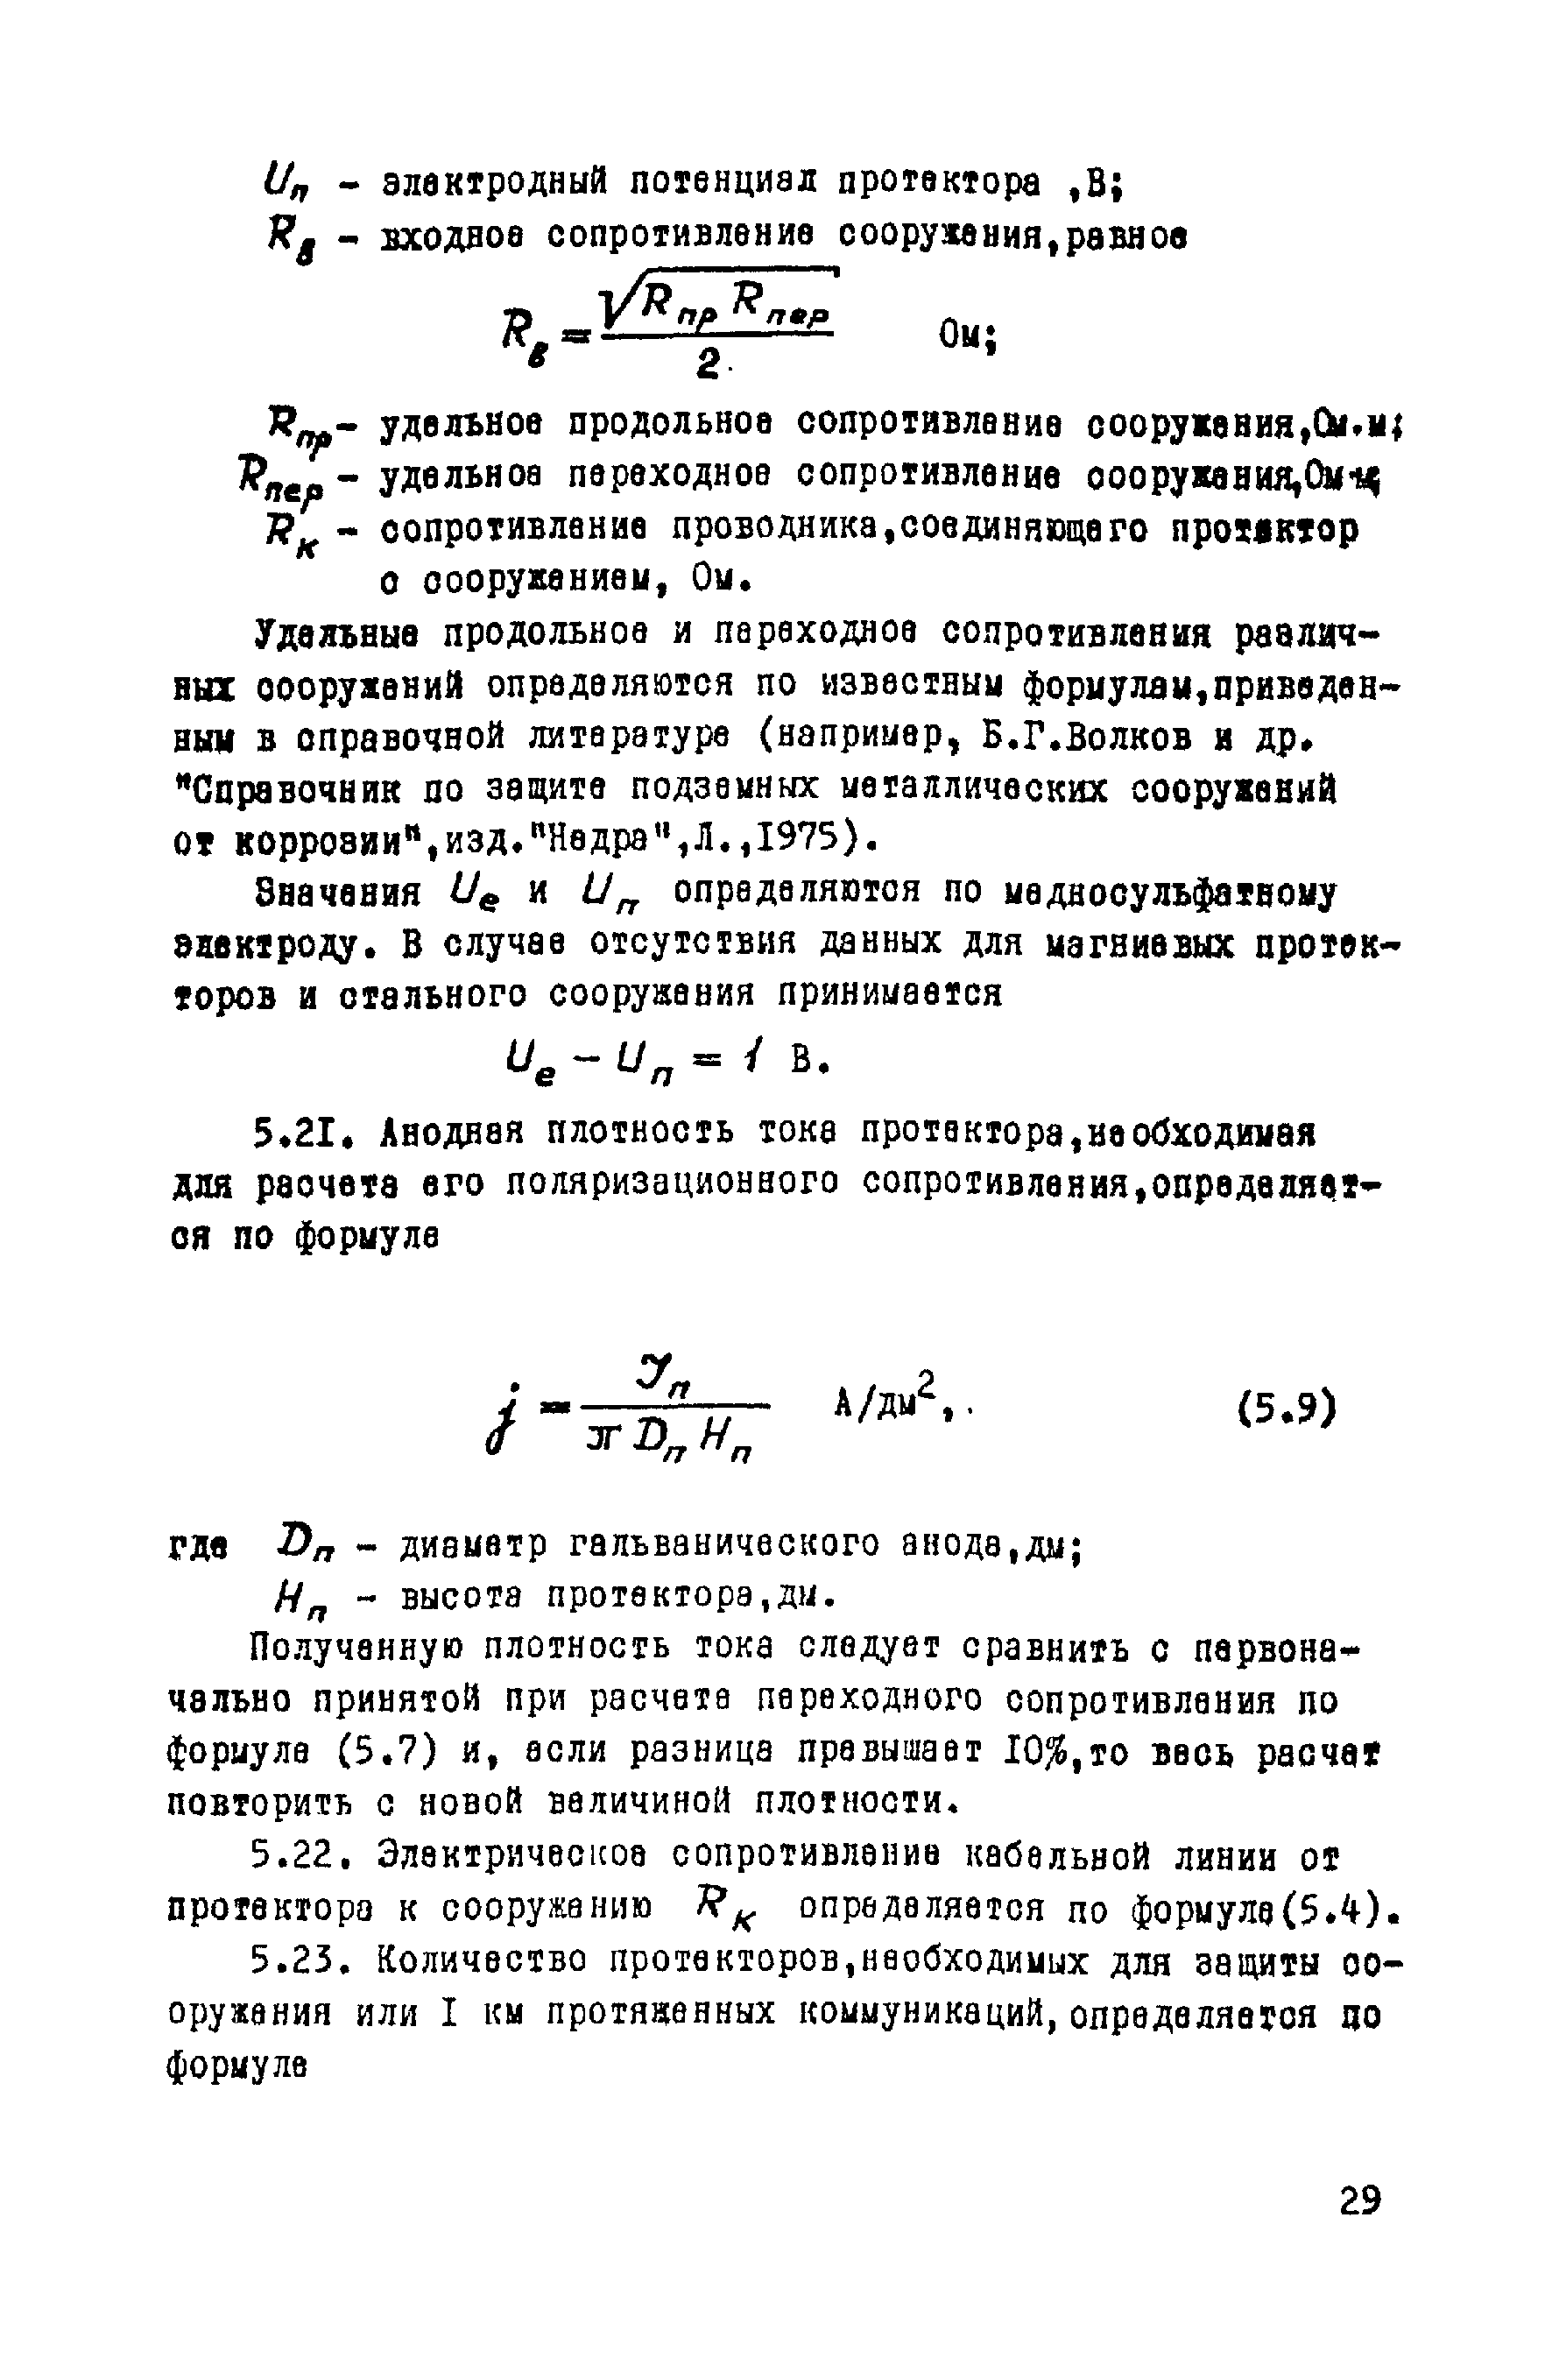 ВСН 14-75/МО СССР